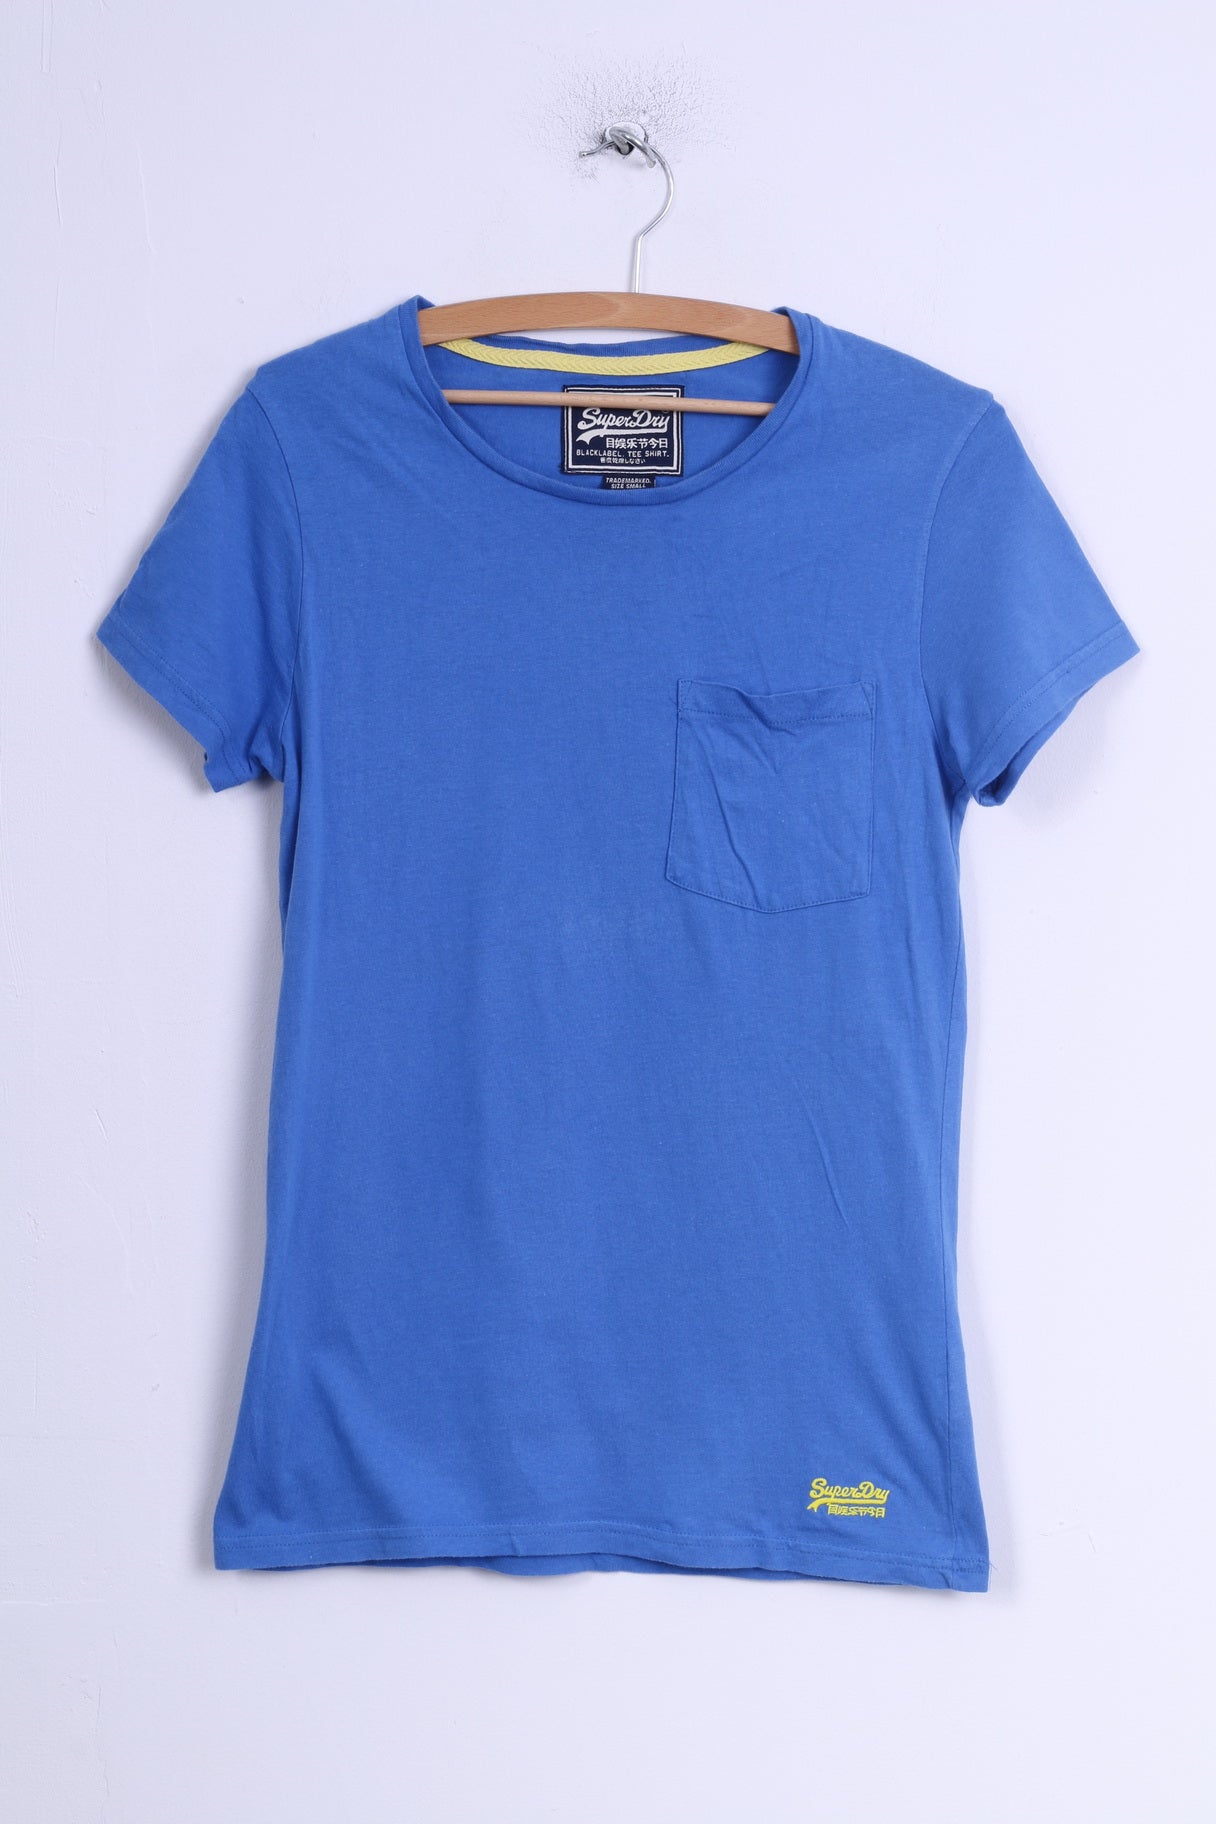 Superdry Womens S T-Shirt Blue Cotton Crew Neck Shirt Top Sport